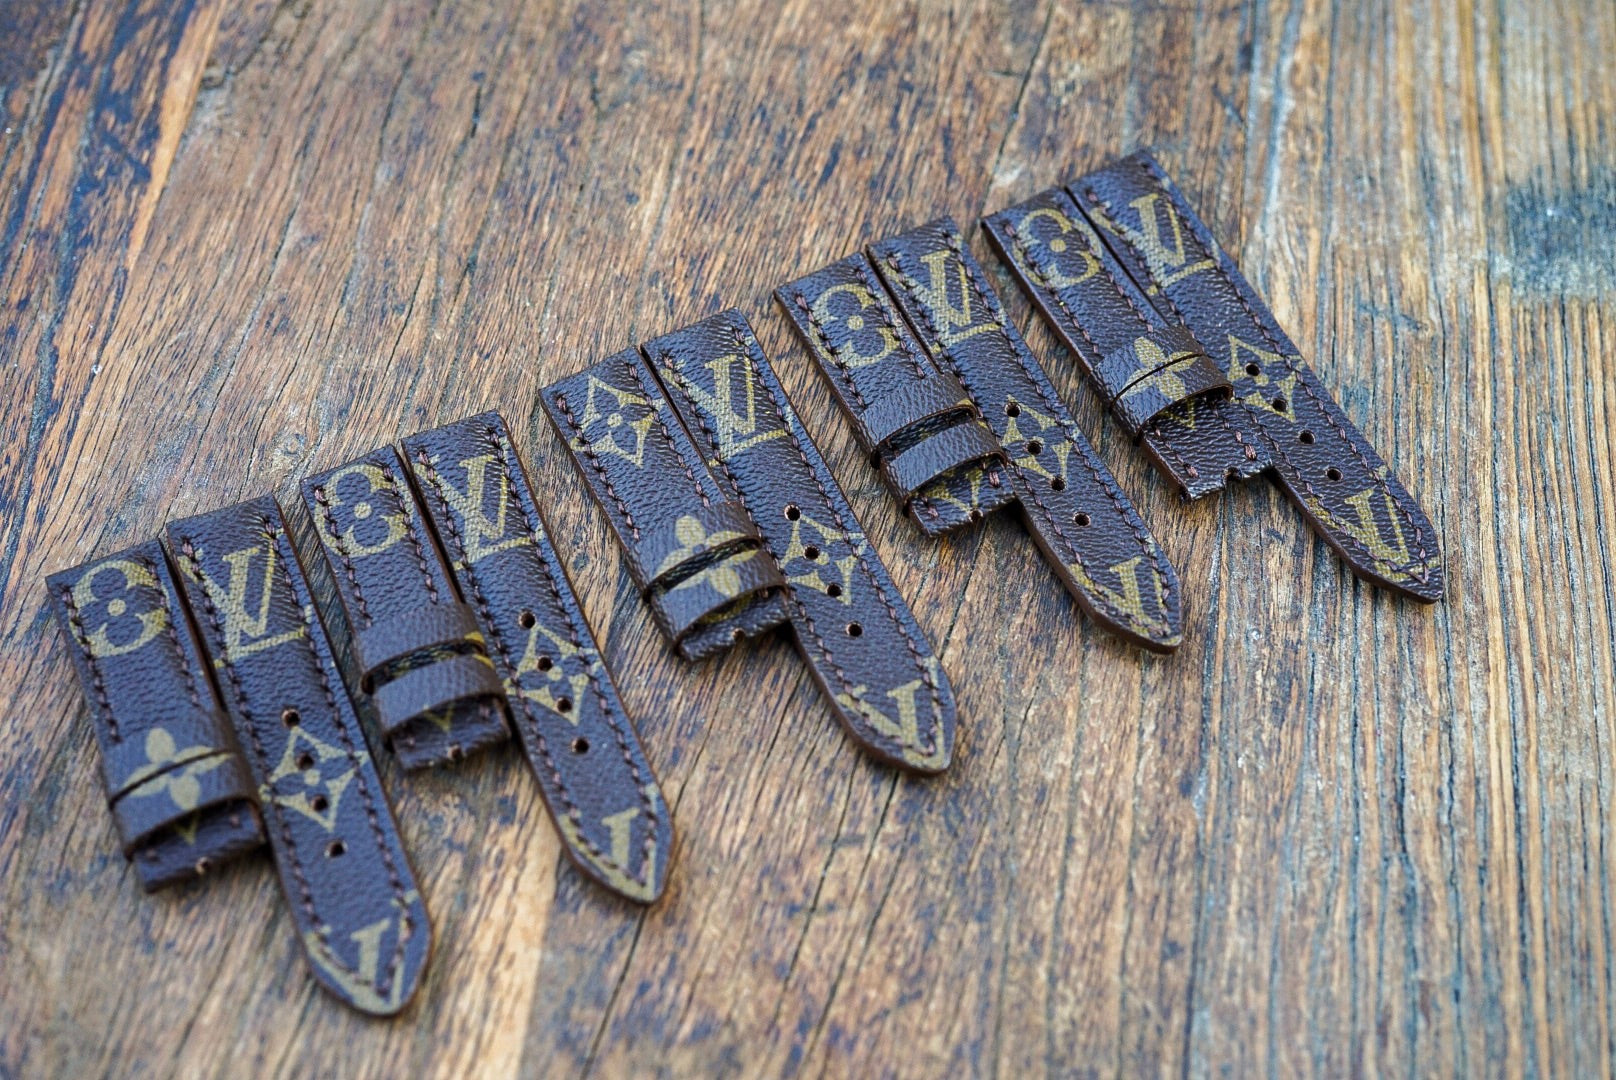 custom louis vuitton belt